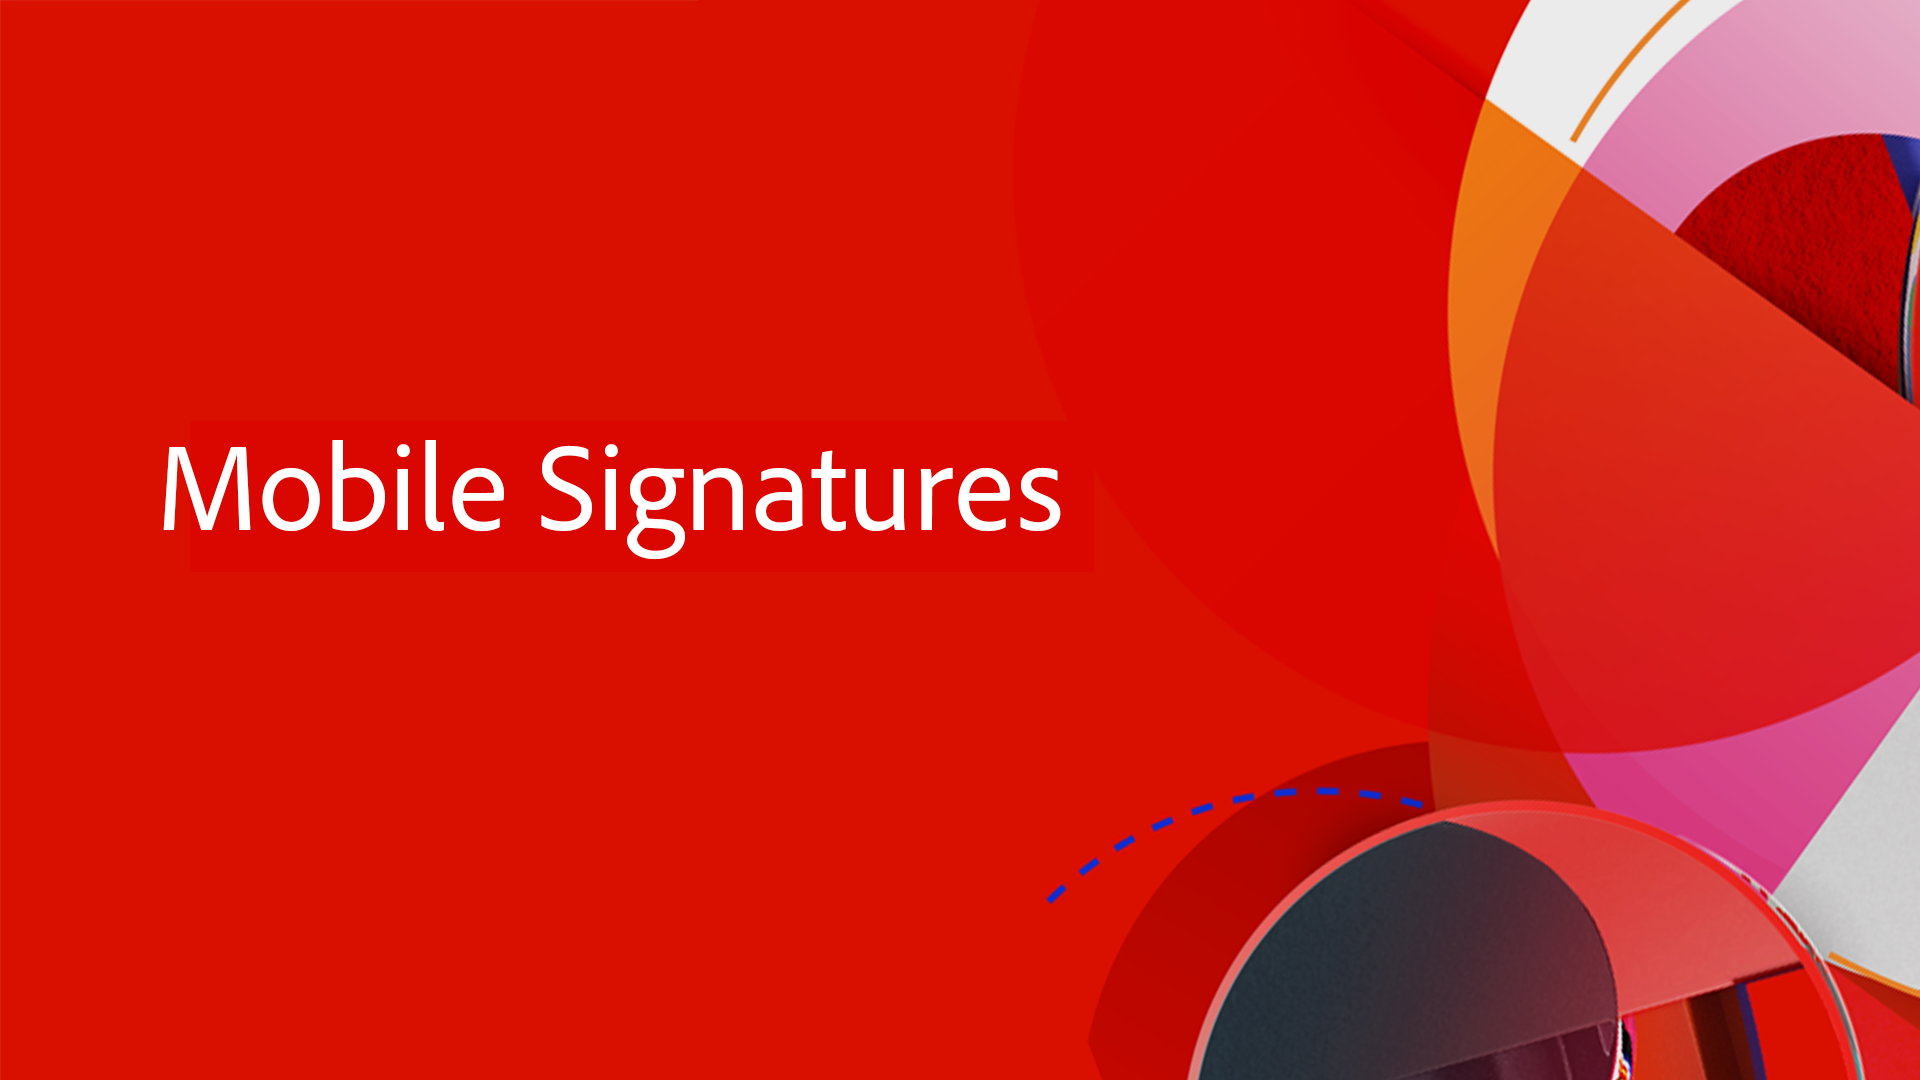 Mobile Signatures